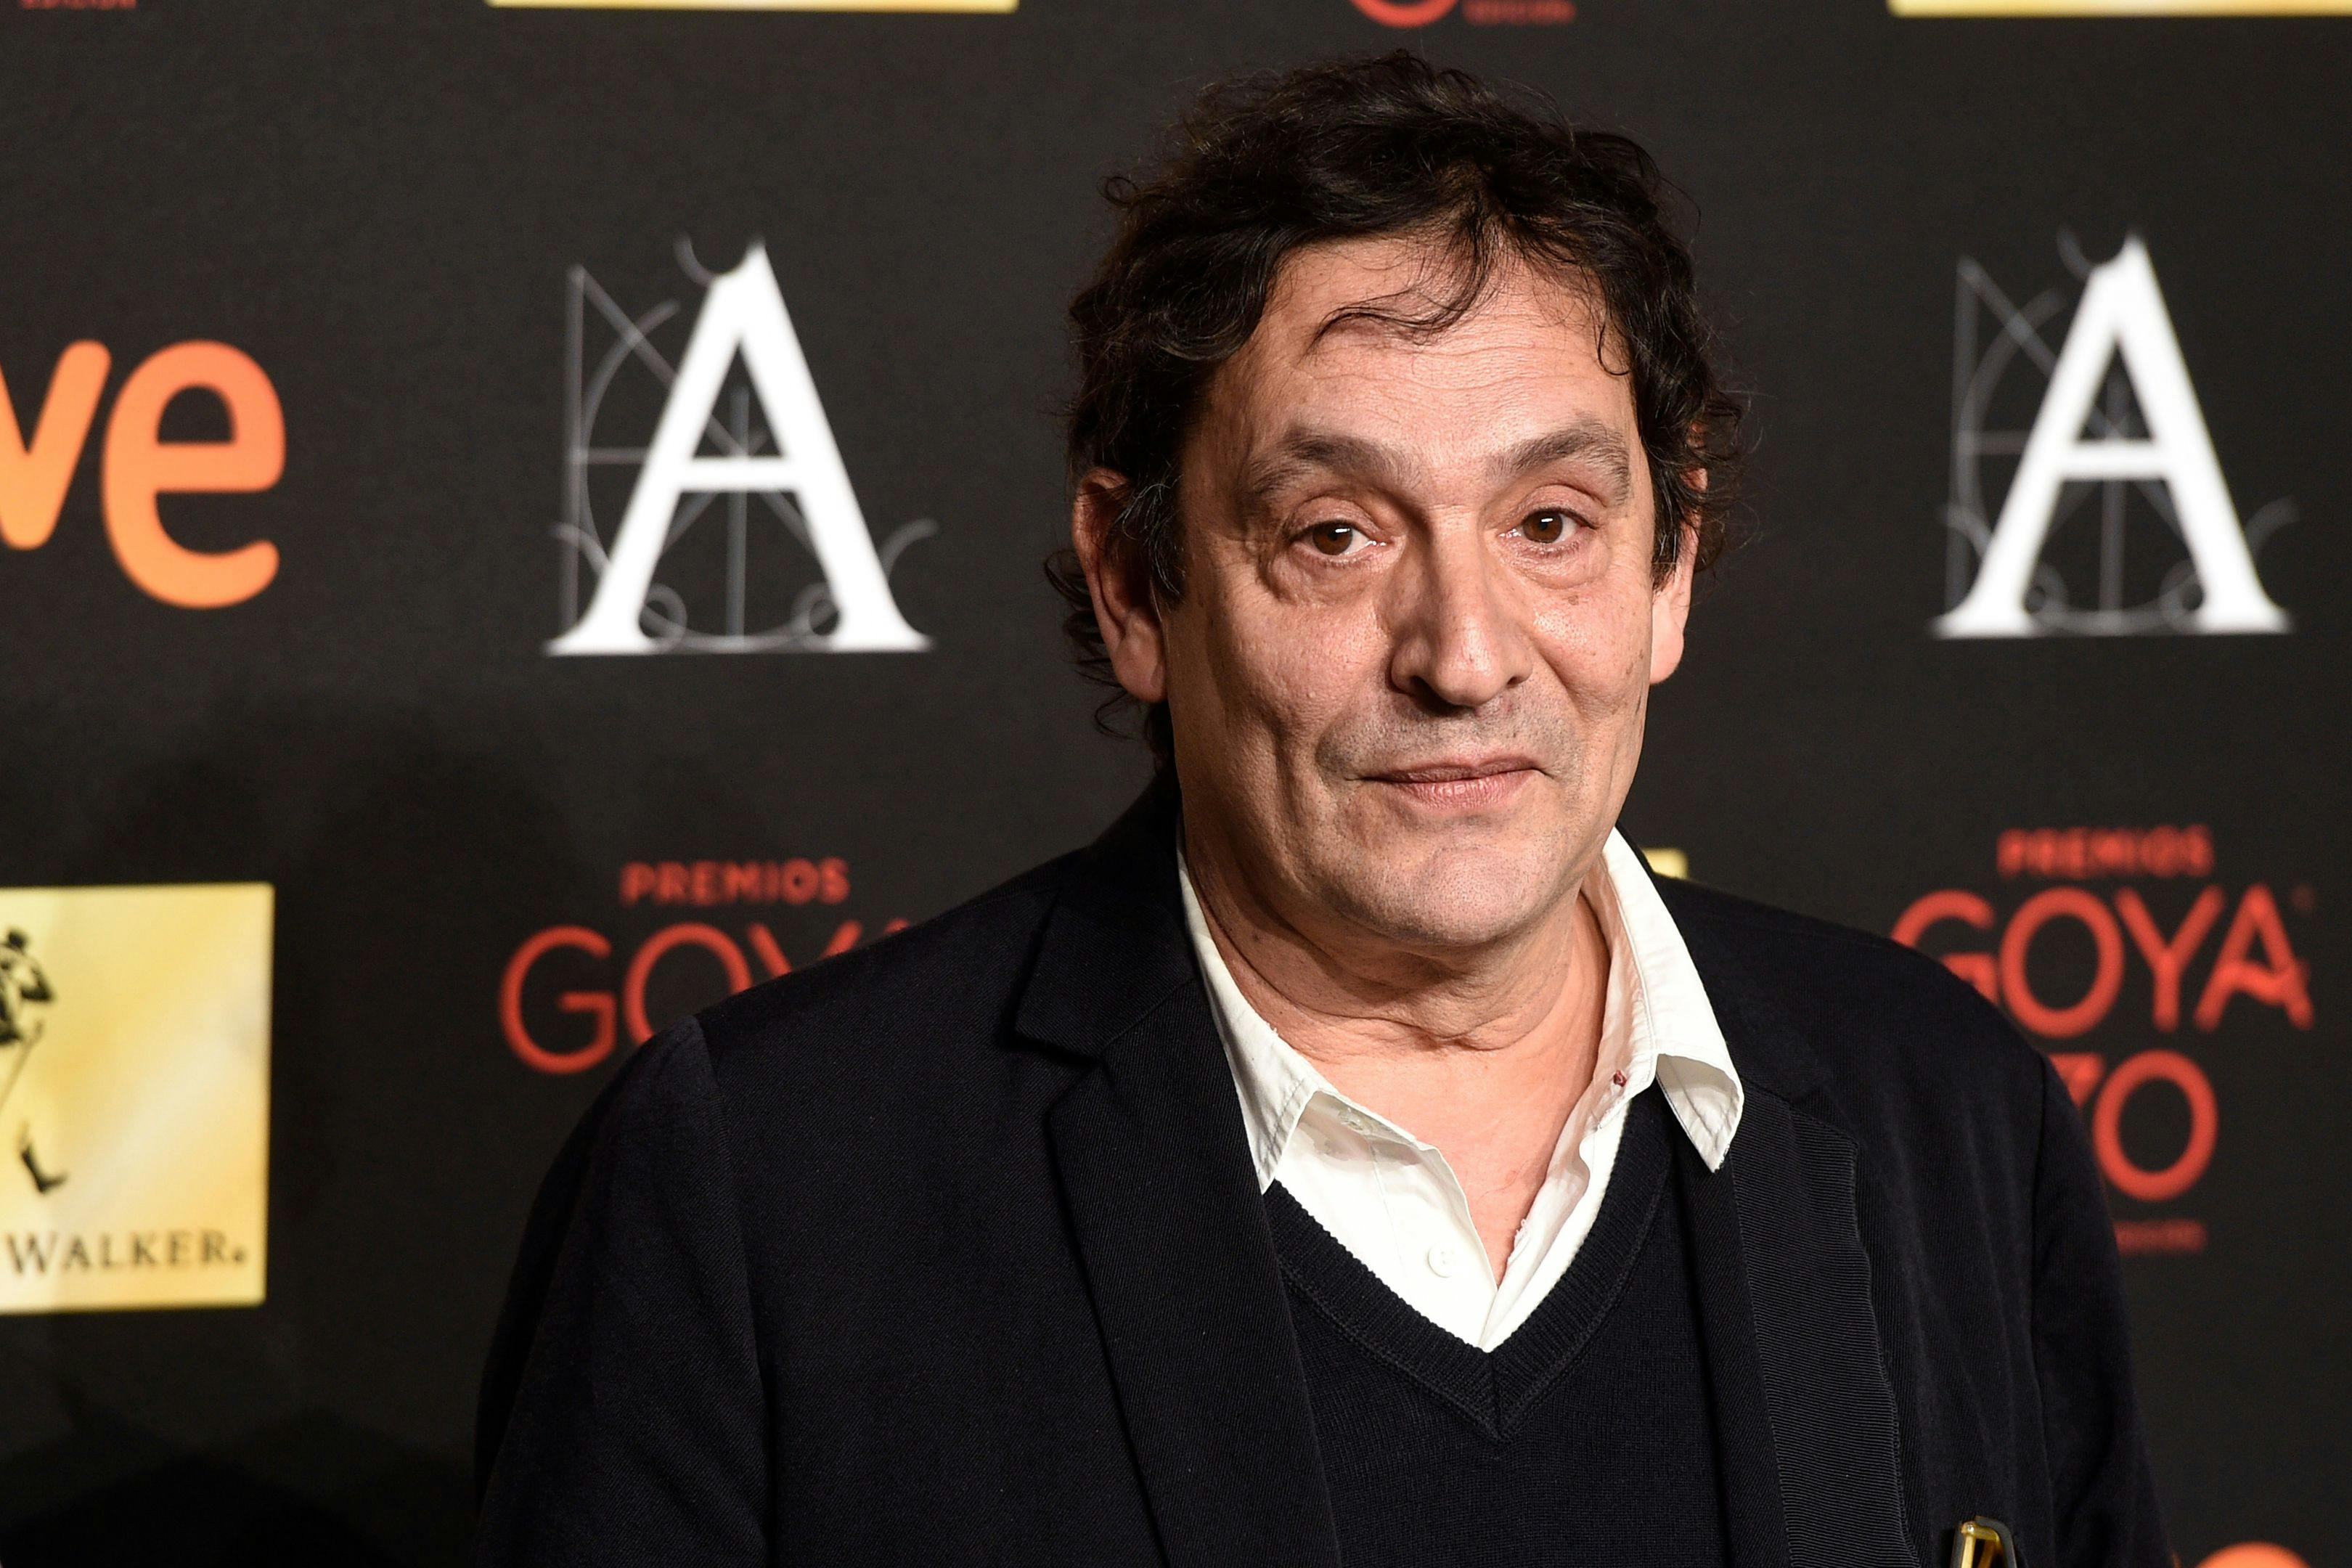 El director de cine Agustí Villaronga acude a la fiesta de nominados de los Goya en el año 2016